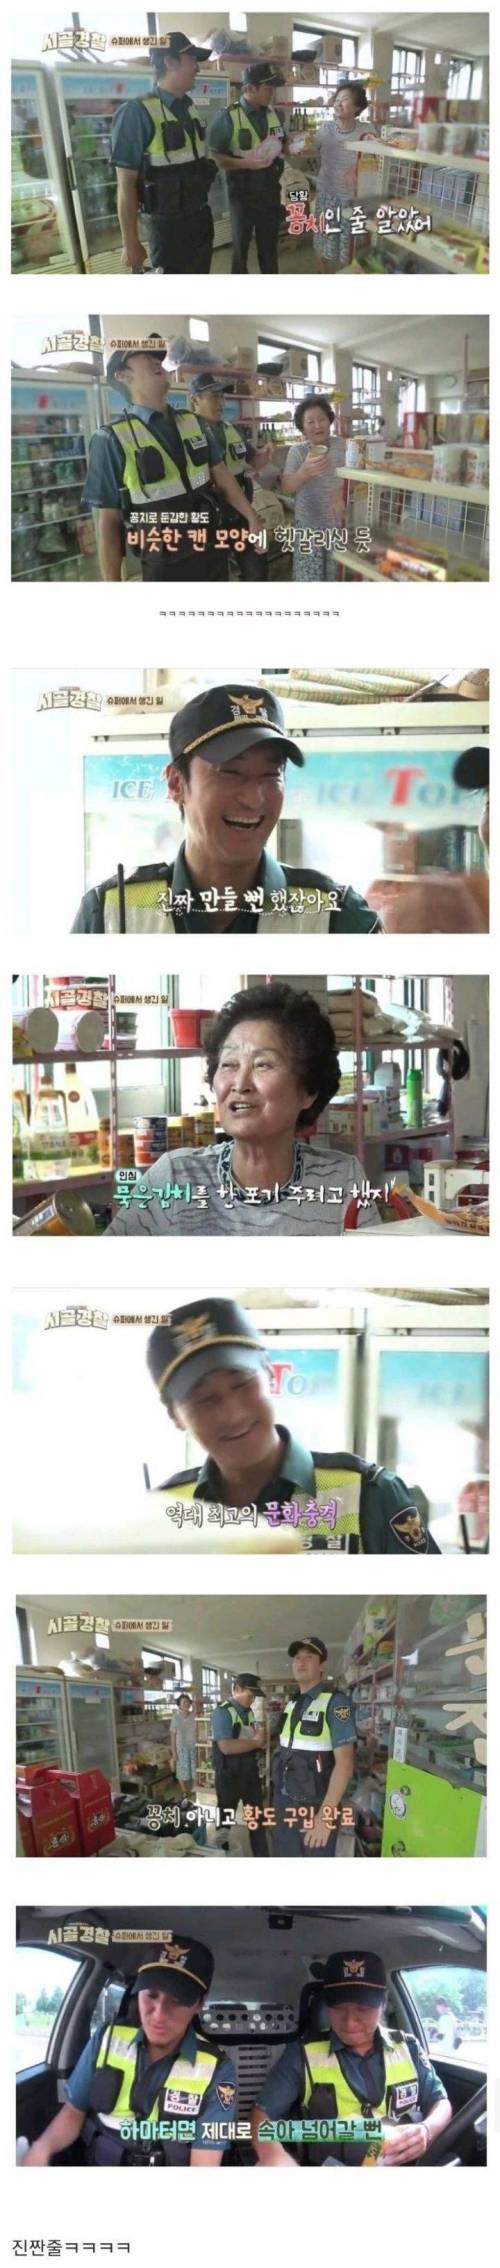 전라북도에서만 먹는다는 특별한 김치찌개.jpg